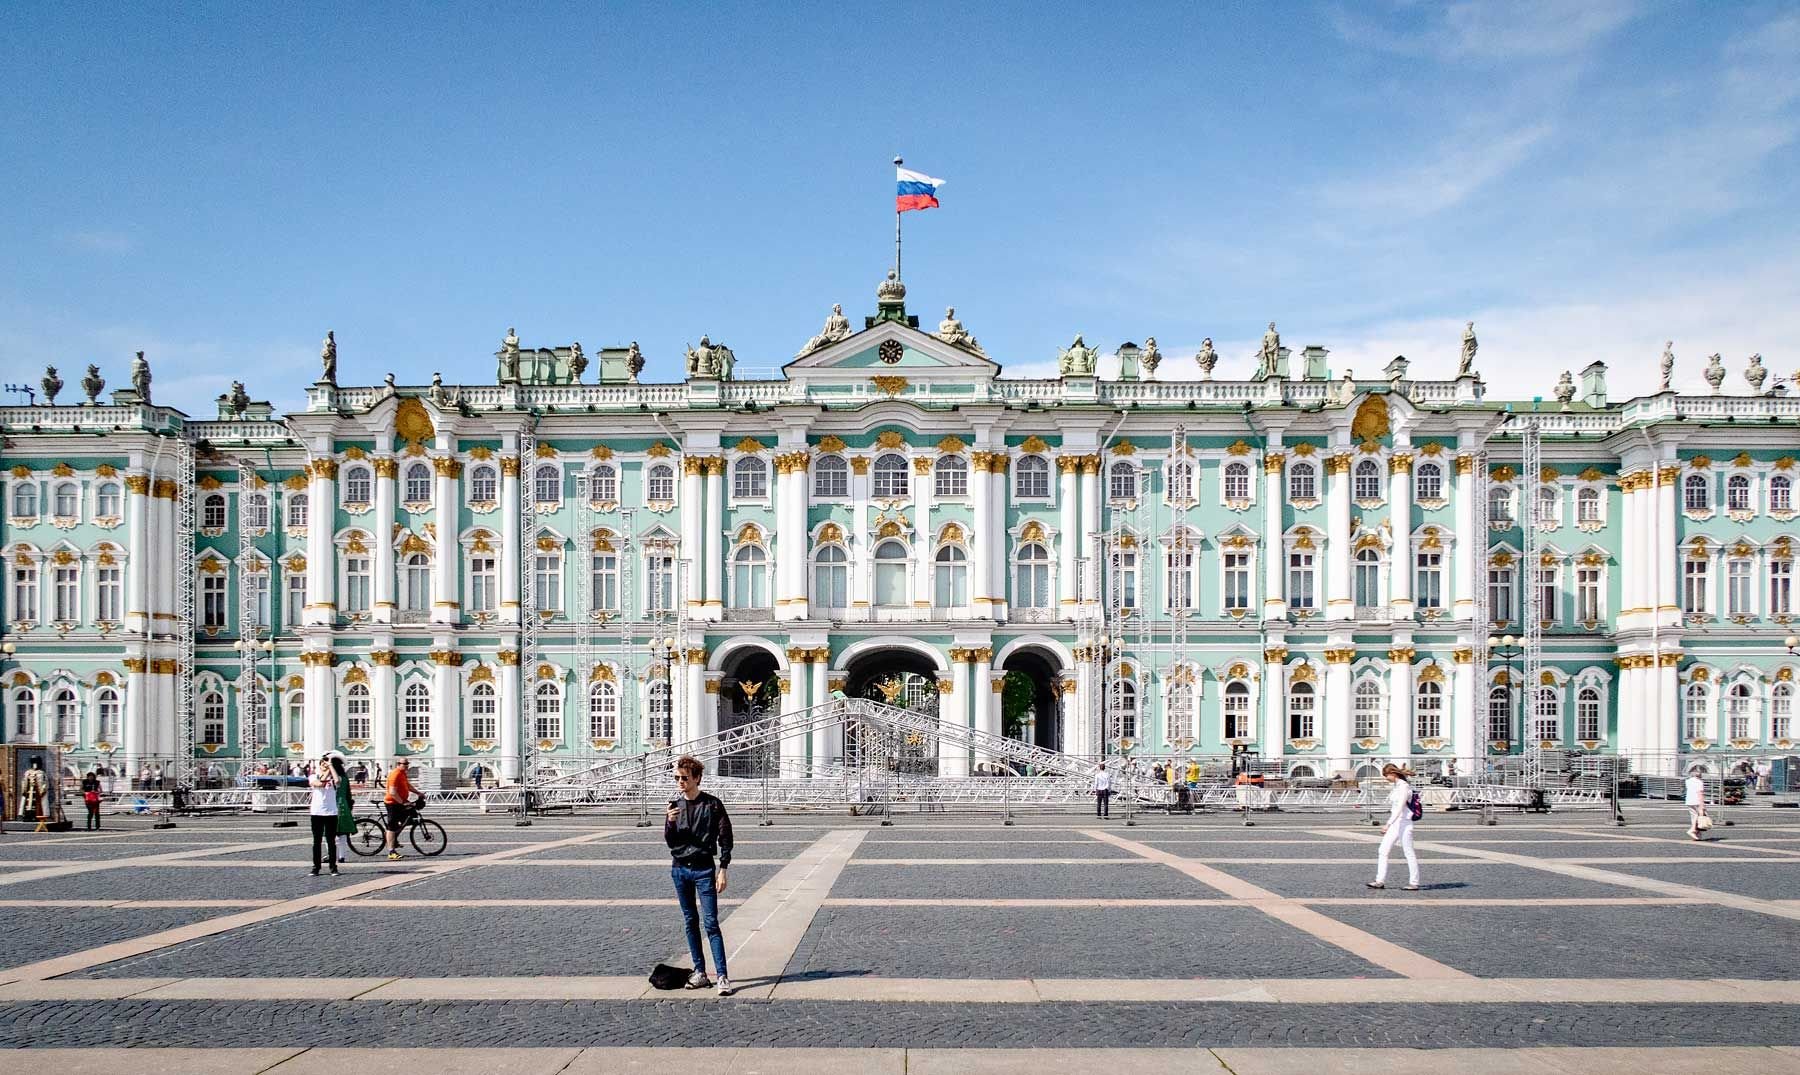 Зимний дворец, Эрмитаж, Казанский